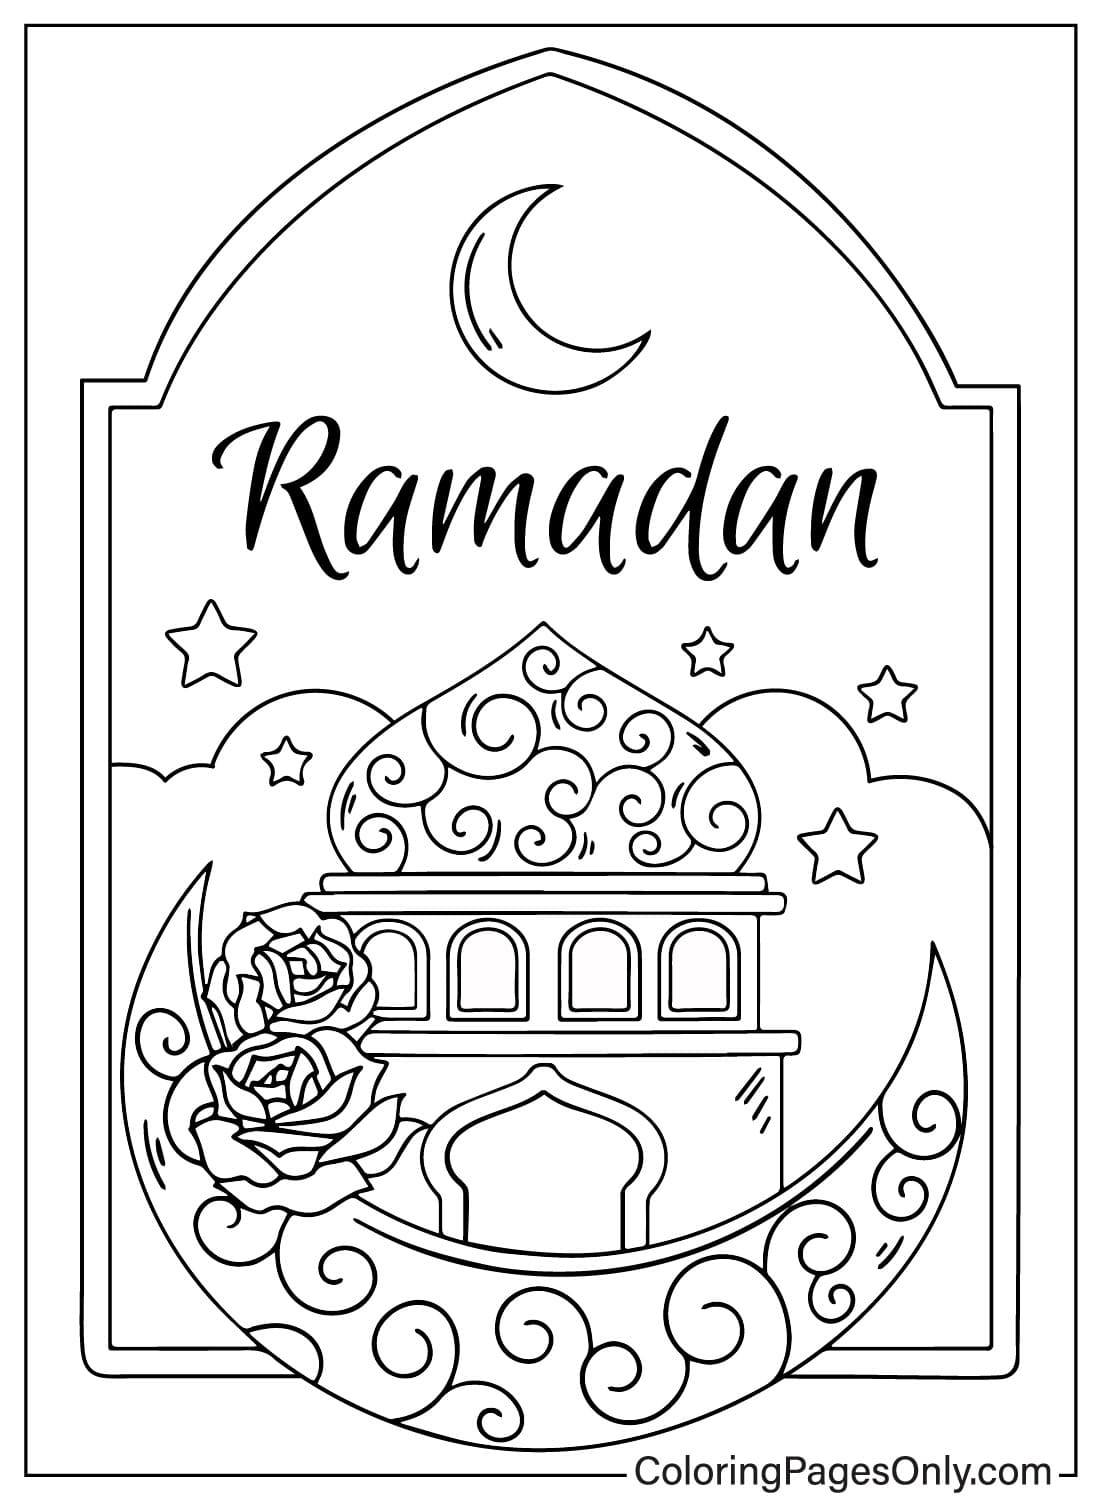 Página para colorear de Ramadán JPG de Ramadán